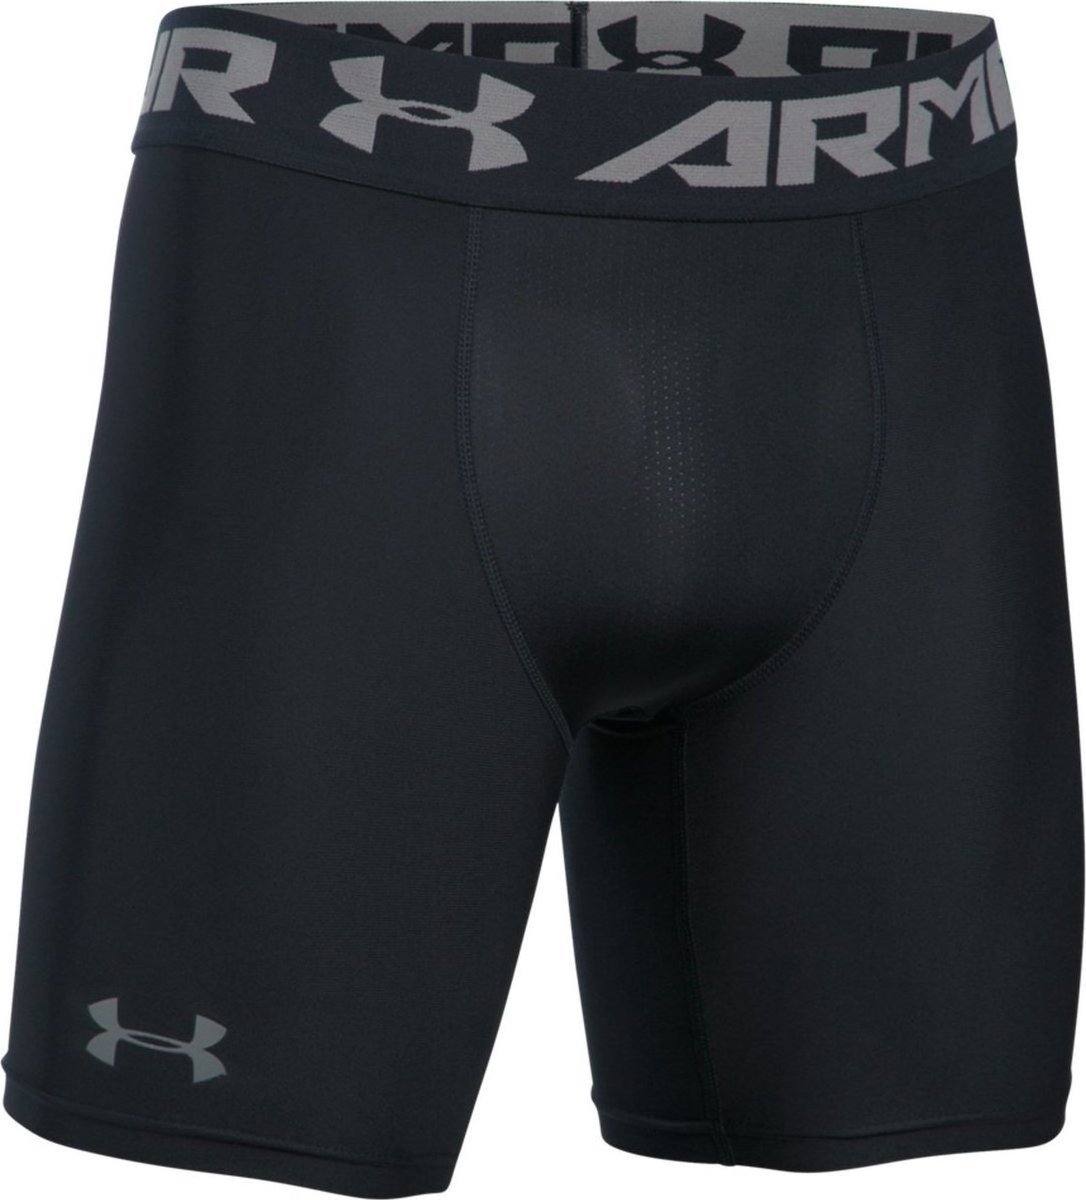 Pantalon corto de compresión Under Armour Under Armour HG Armour 2.0 Comp Short